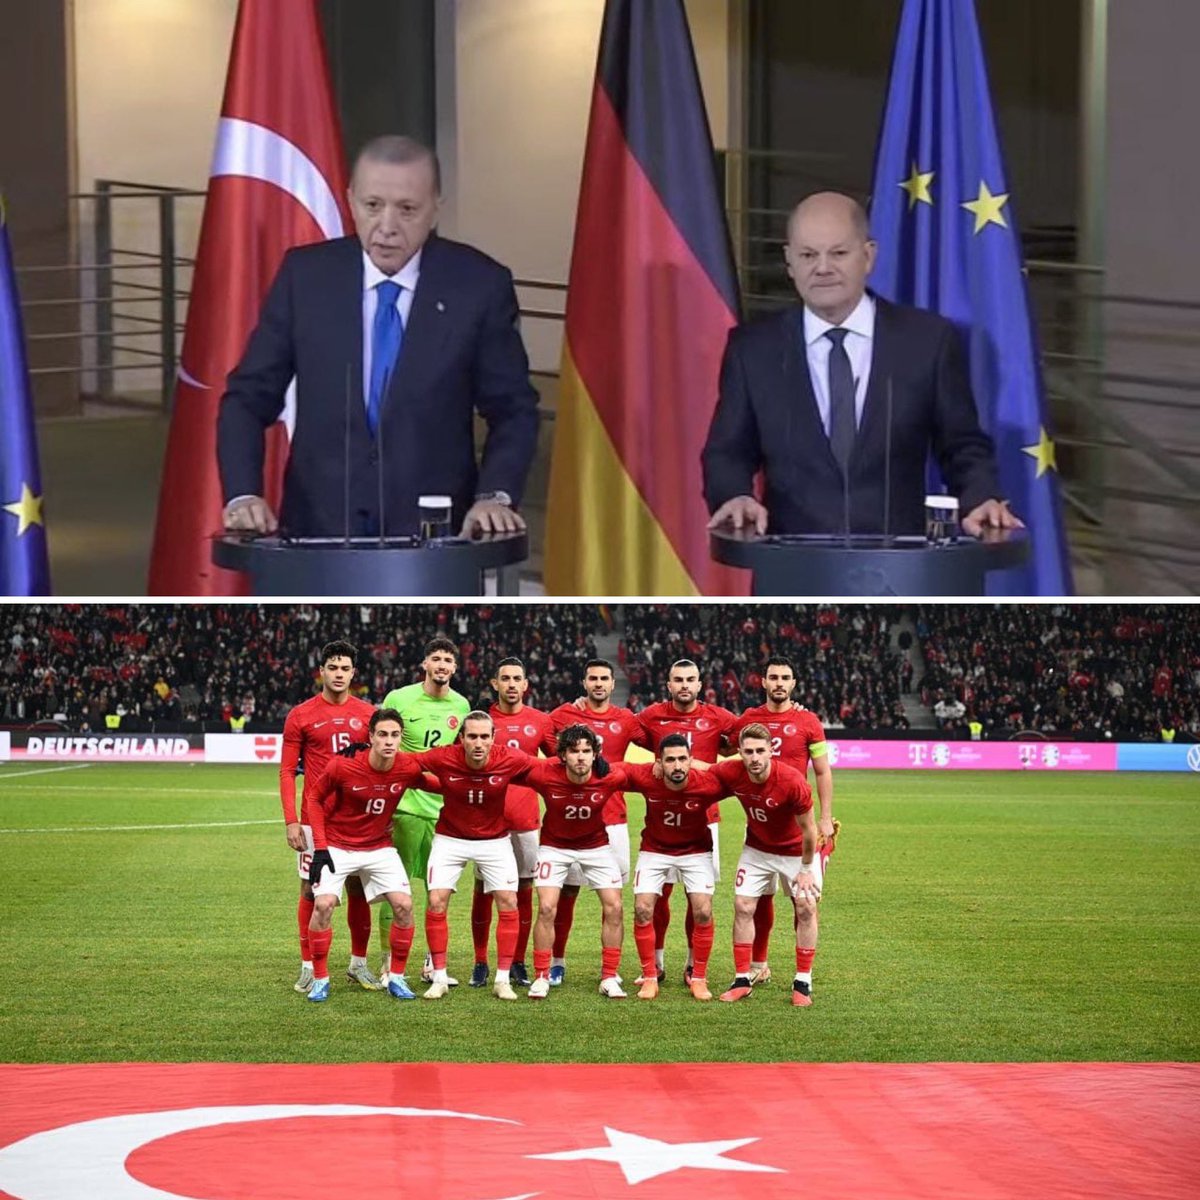 😱Almanya son 24 saatte 2 büyük şok yaşadı! 👊🏻Önce reis Scholz’u masada tokatladı, sonra #BizimÇocuklar Almanya-Türkiye maçında Alman futbolcuları sahadan sildi. 🇹🇷Sahada, masada, sporda, diplomaside Türk’ün gücü ve kararlılığı var.